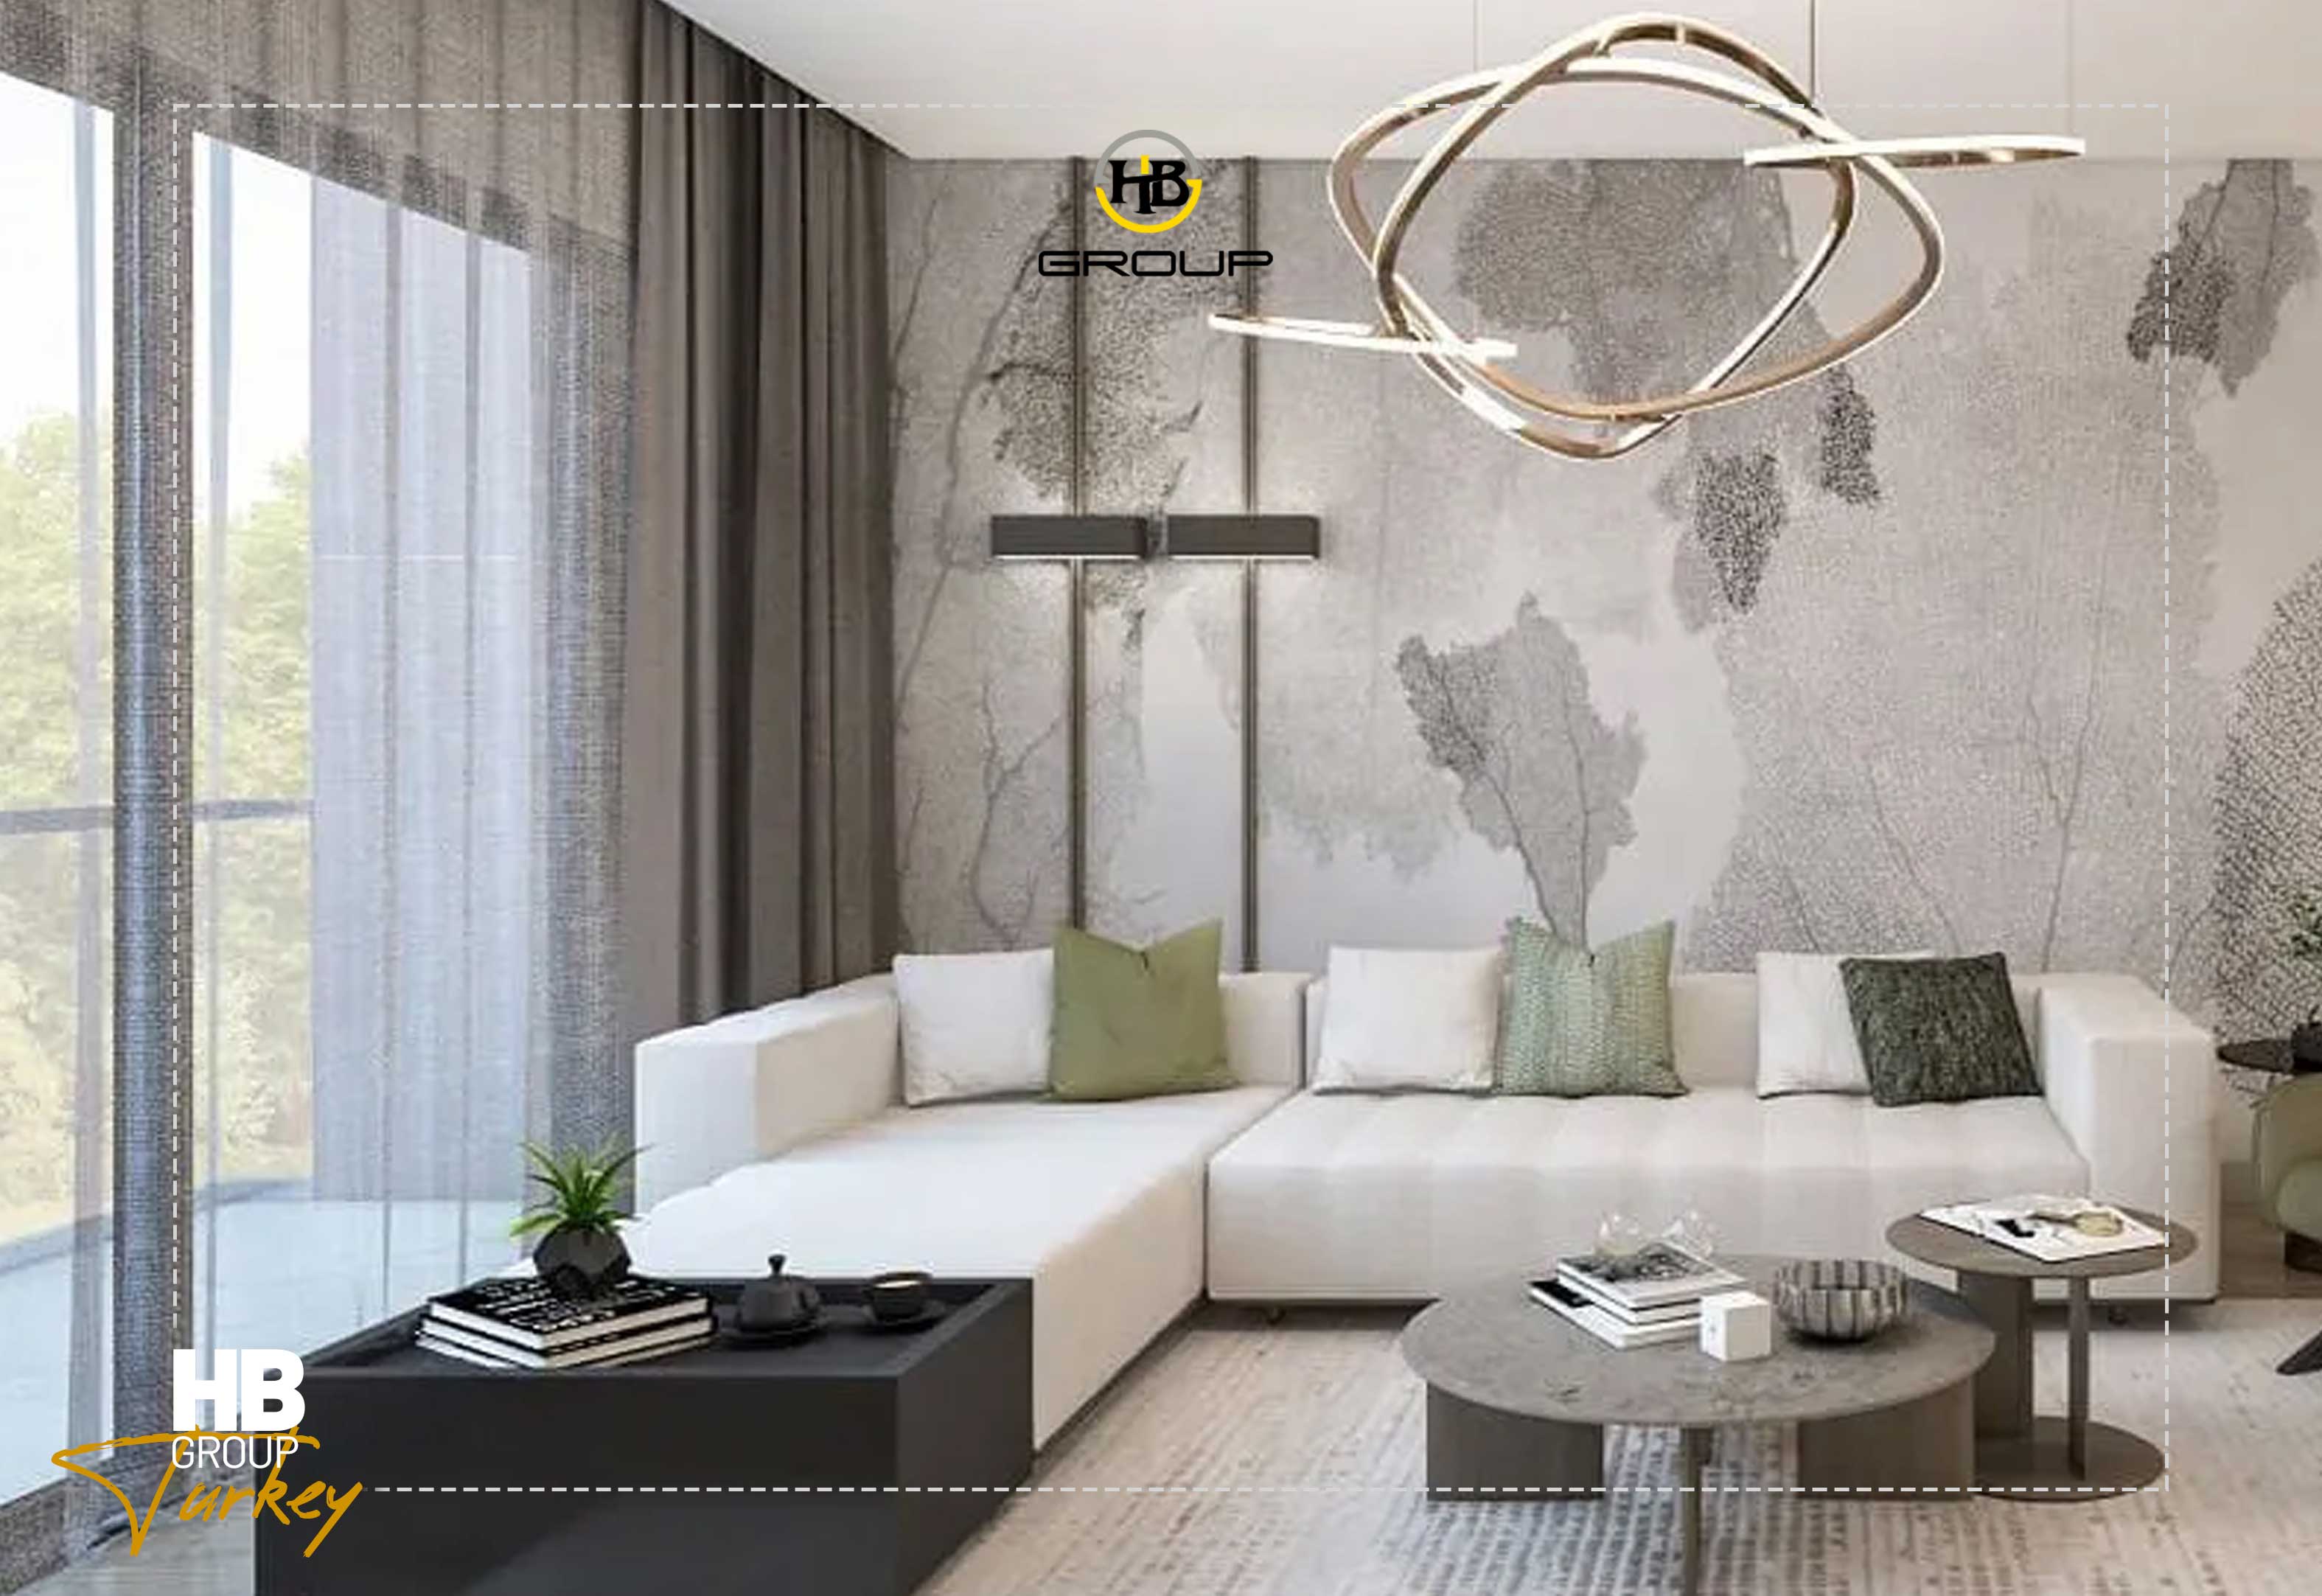 پروژه آلیا کونوتلاری Alya Konutları خرید آپارتمان در استانبول 